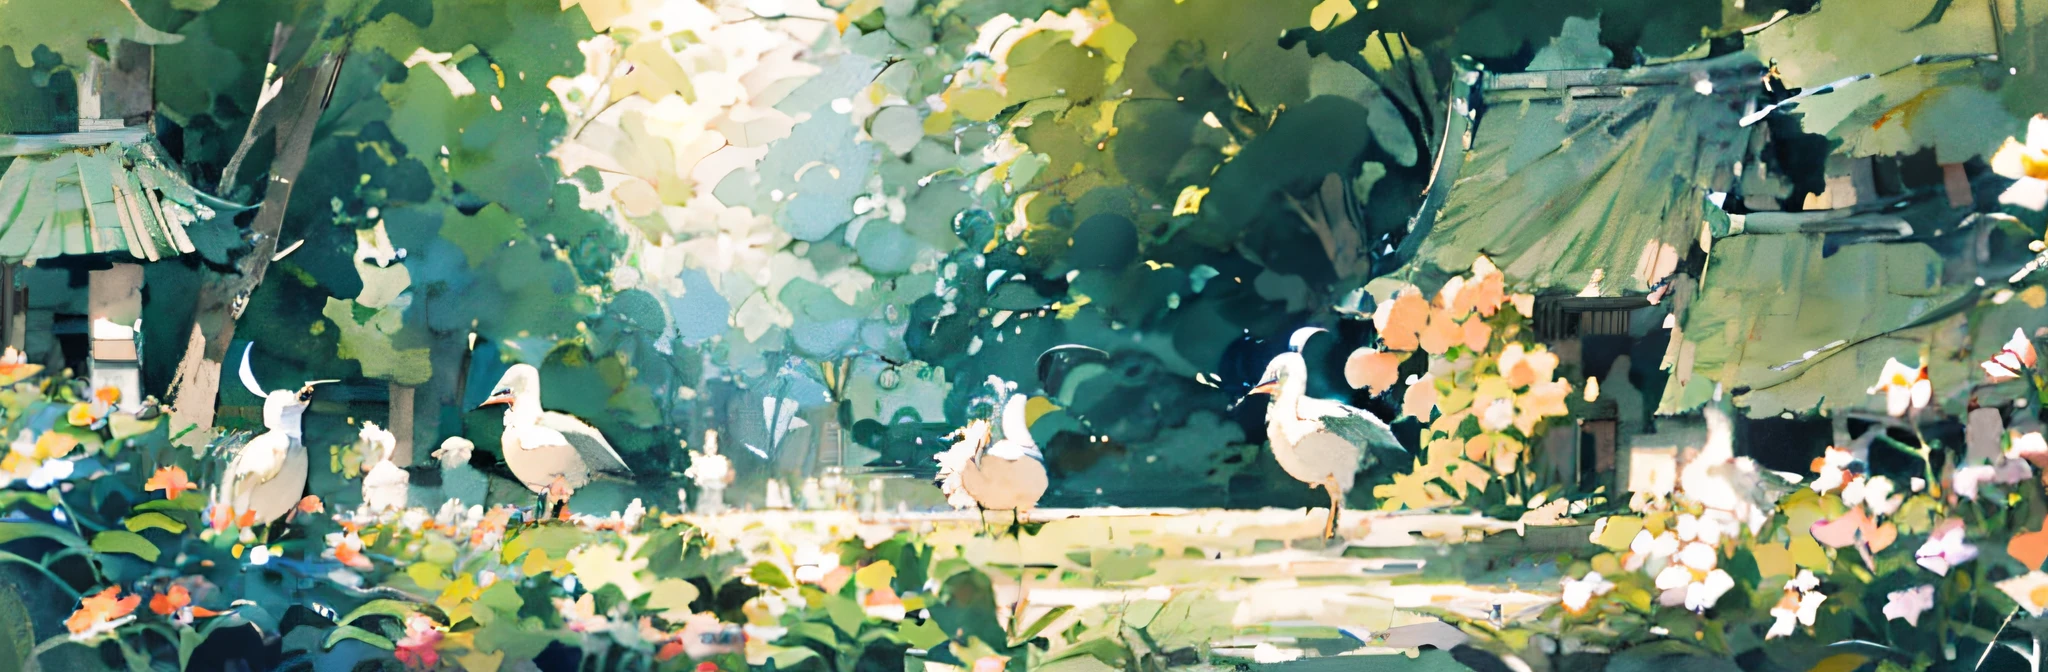 hay un cuadro de una niña y dos pájaros blancos en un bosque, dreamy ilustración, ilustrado en estilo caprichoso, a beautiful artwork ilustración, ilustración!, bellamente ilustrado, bosque caprichoso, Por Ni Duan, blurry and dreamy ilustración, inspirado por Pascale Campion, cute ilustración, por Mei Qing, por Yuko Tatsushima, Un bosque con conejitos